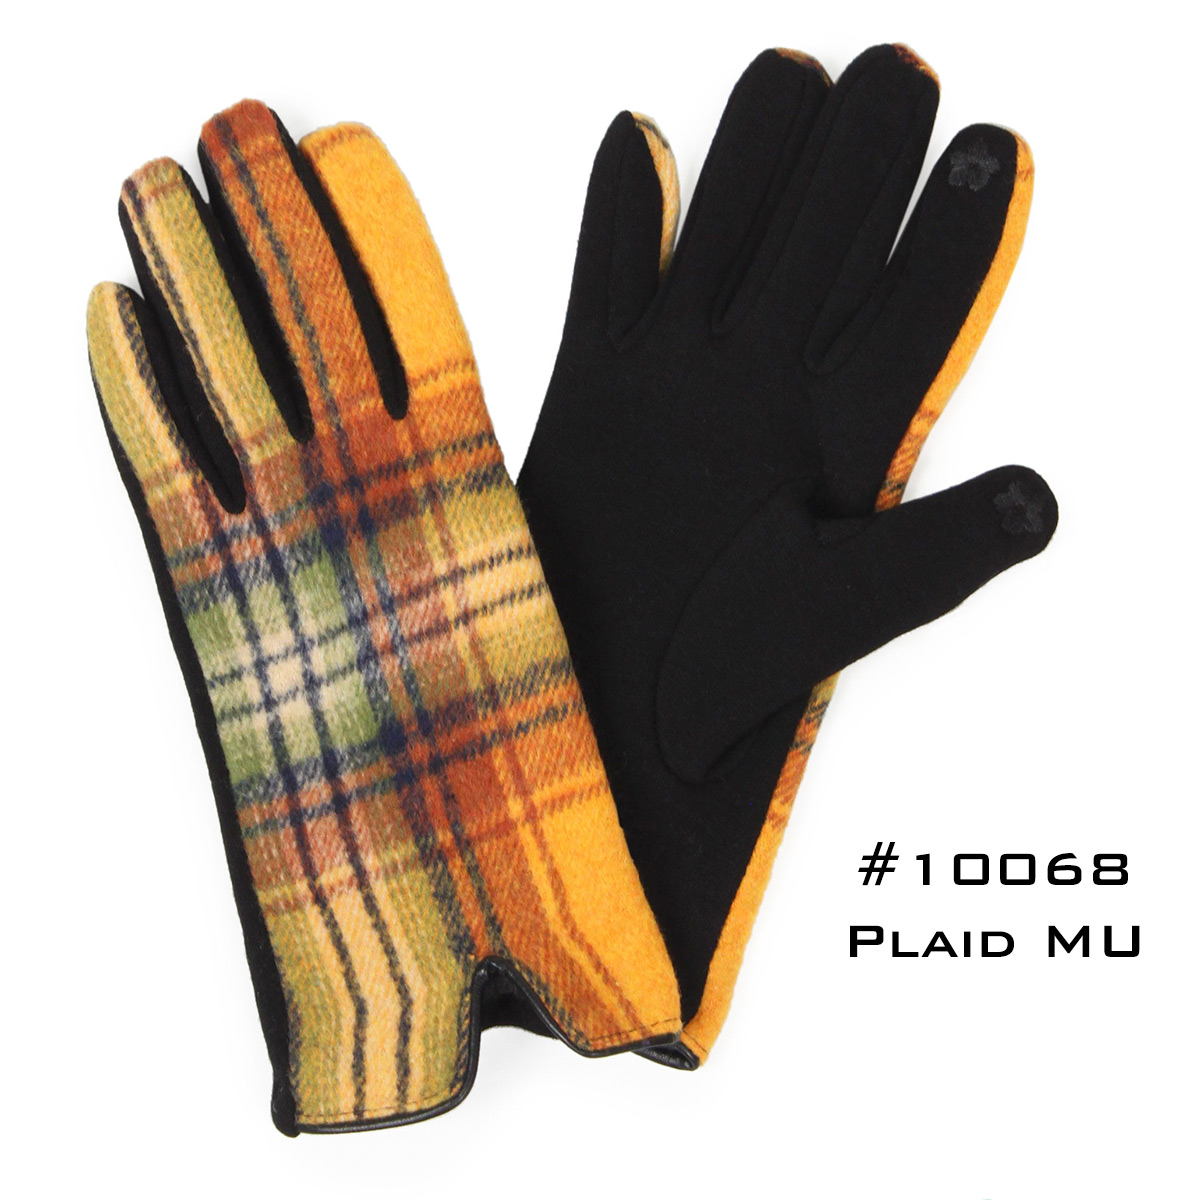 10068 PLAID MU Touch Screen Smart Gloves - Fleece Lined 